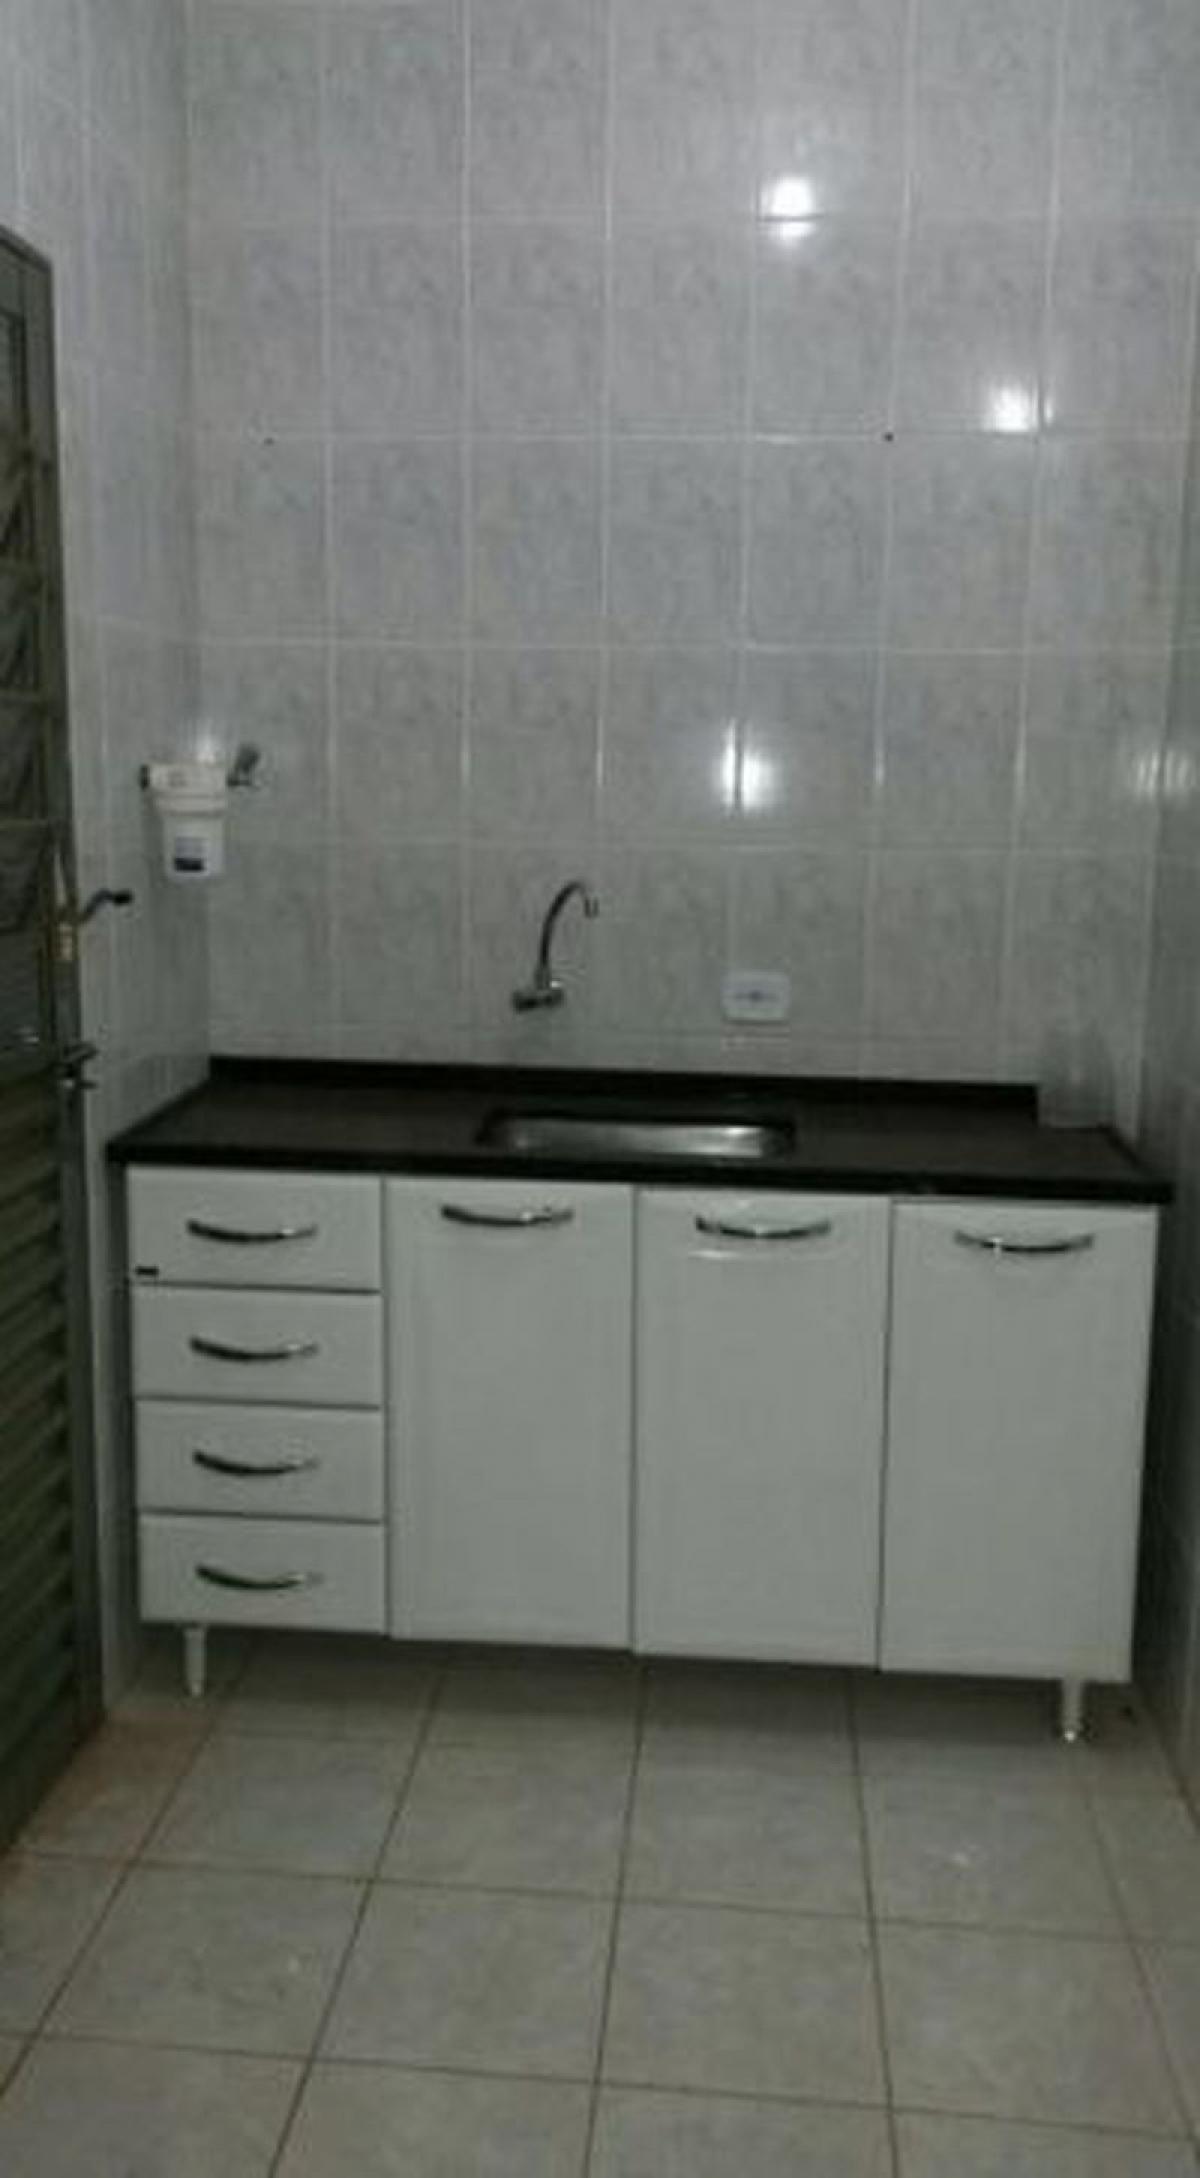 Picture of Apartment For Sale in Mato Grosso Do Sul, Mato Grosso do Sul, Brazil